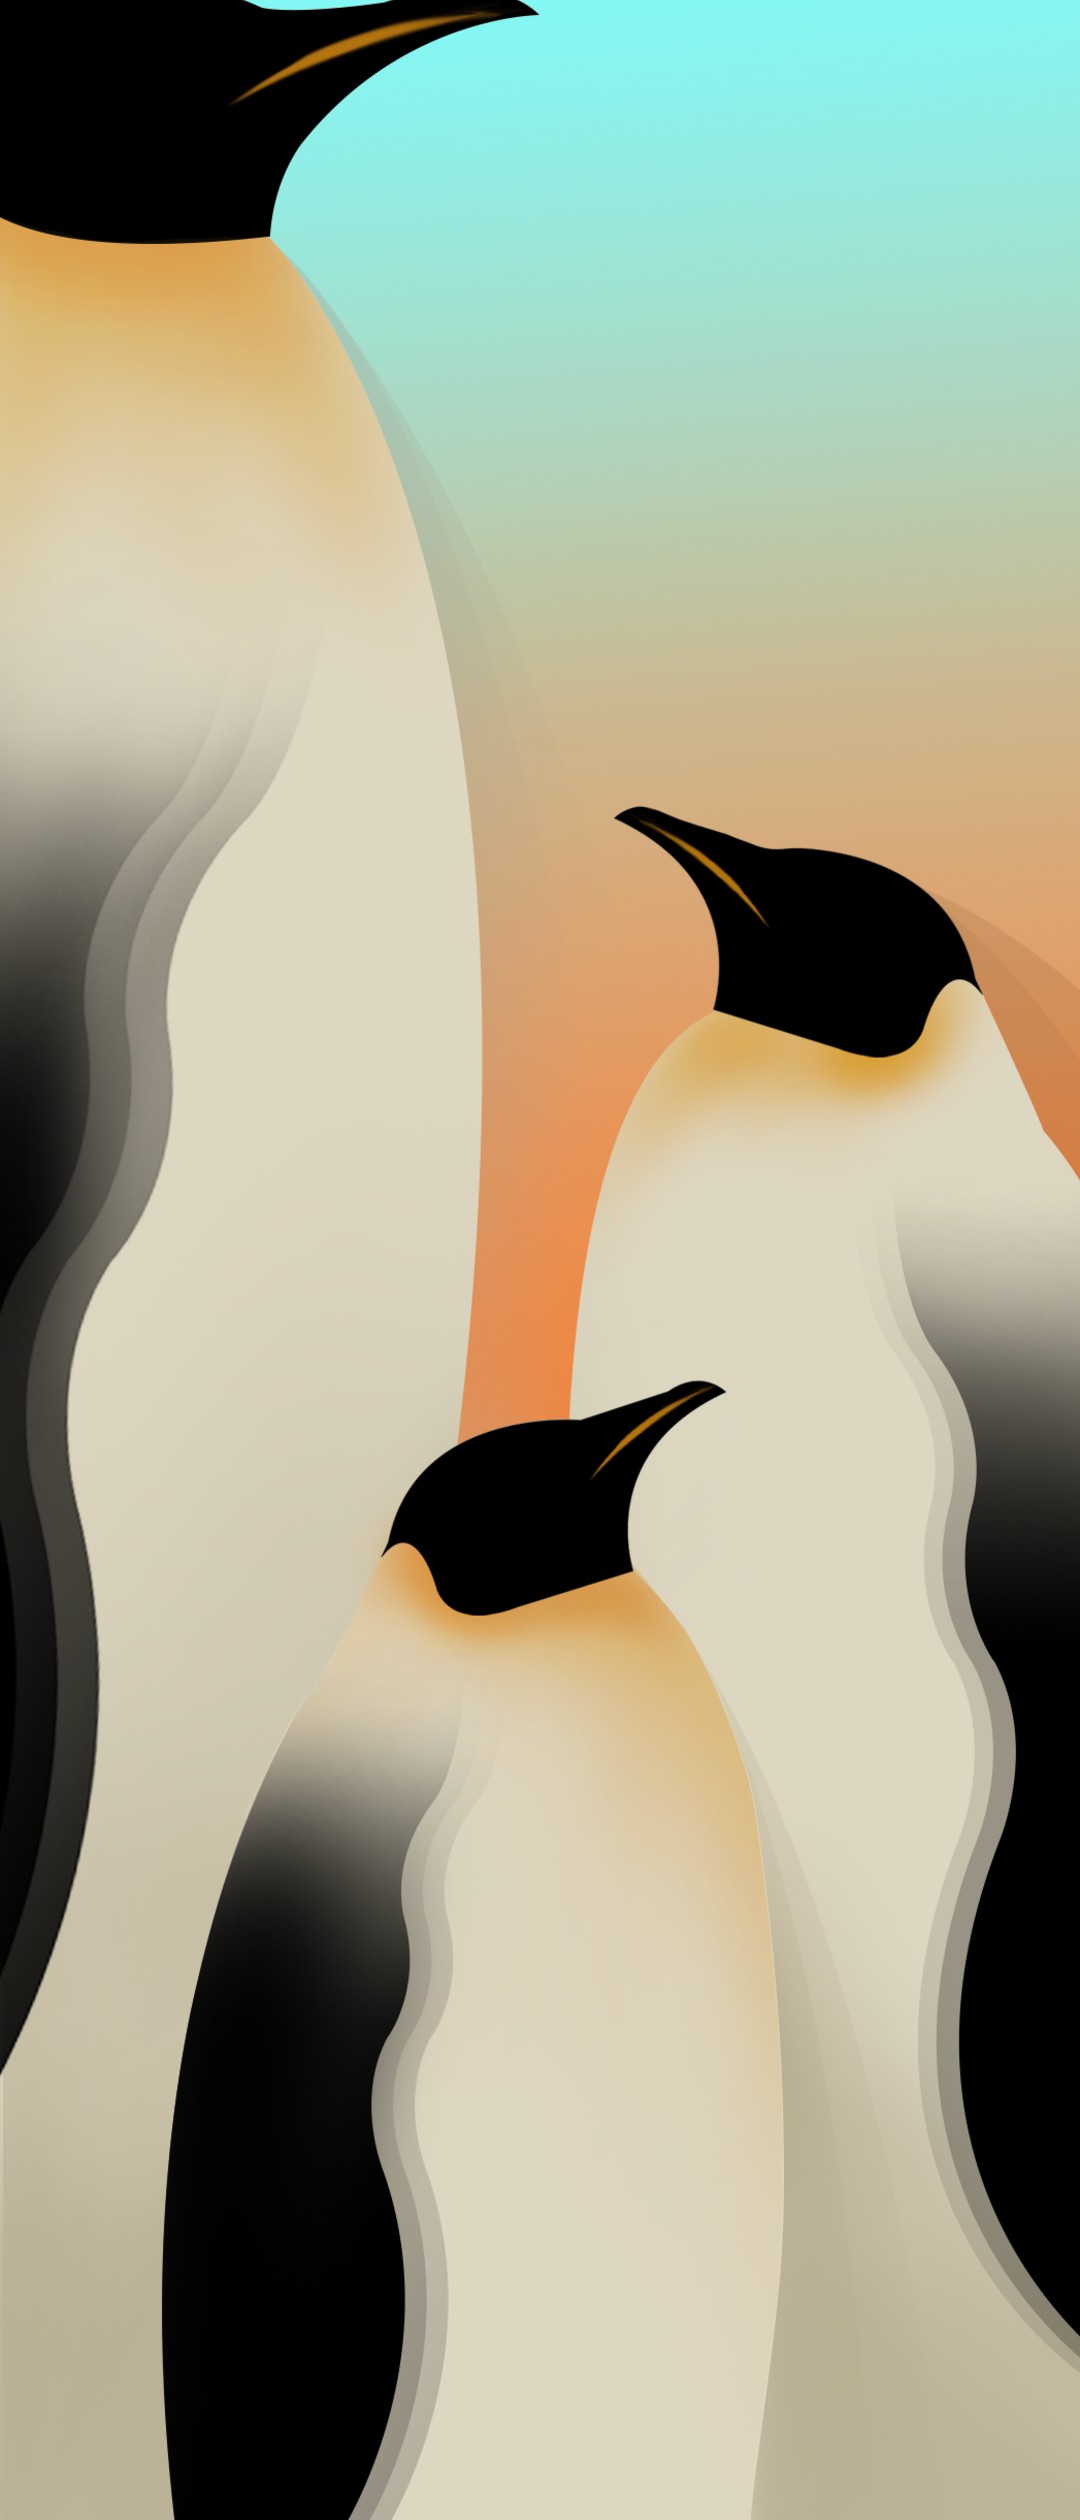 新しいコレクション 壁紙 スマホ イラスト ペンギン 72 壁紙 スマホ ペンギン イラスト